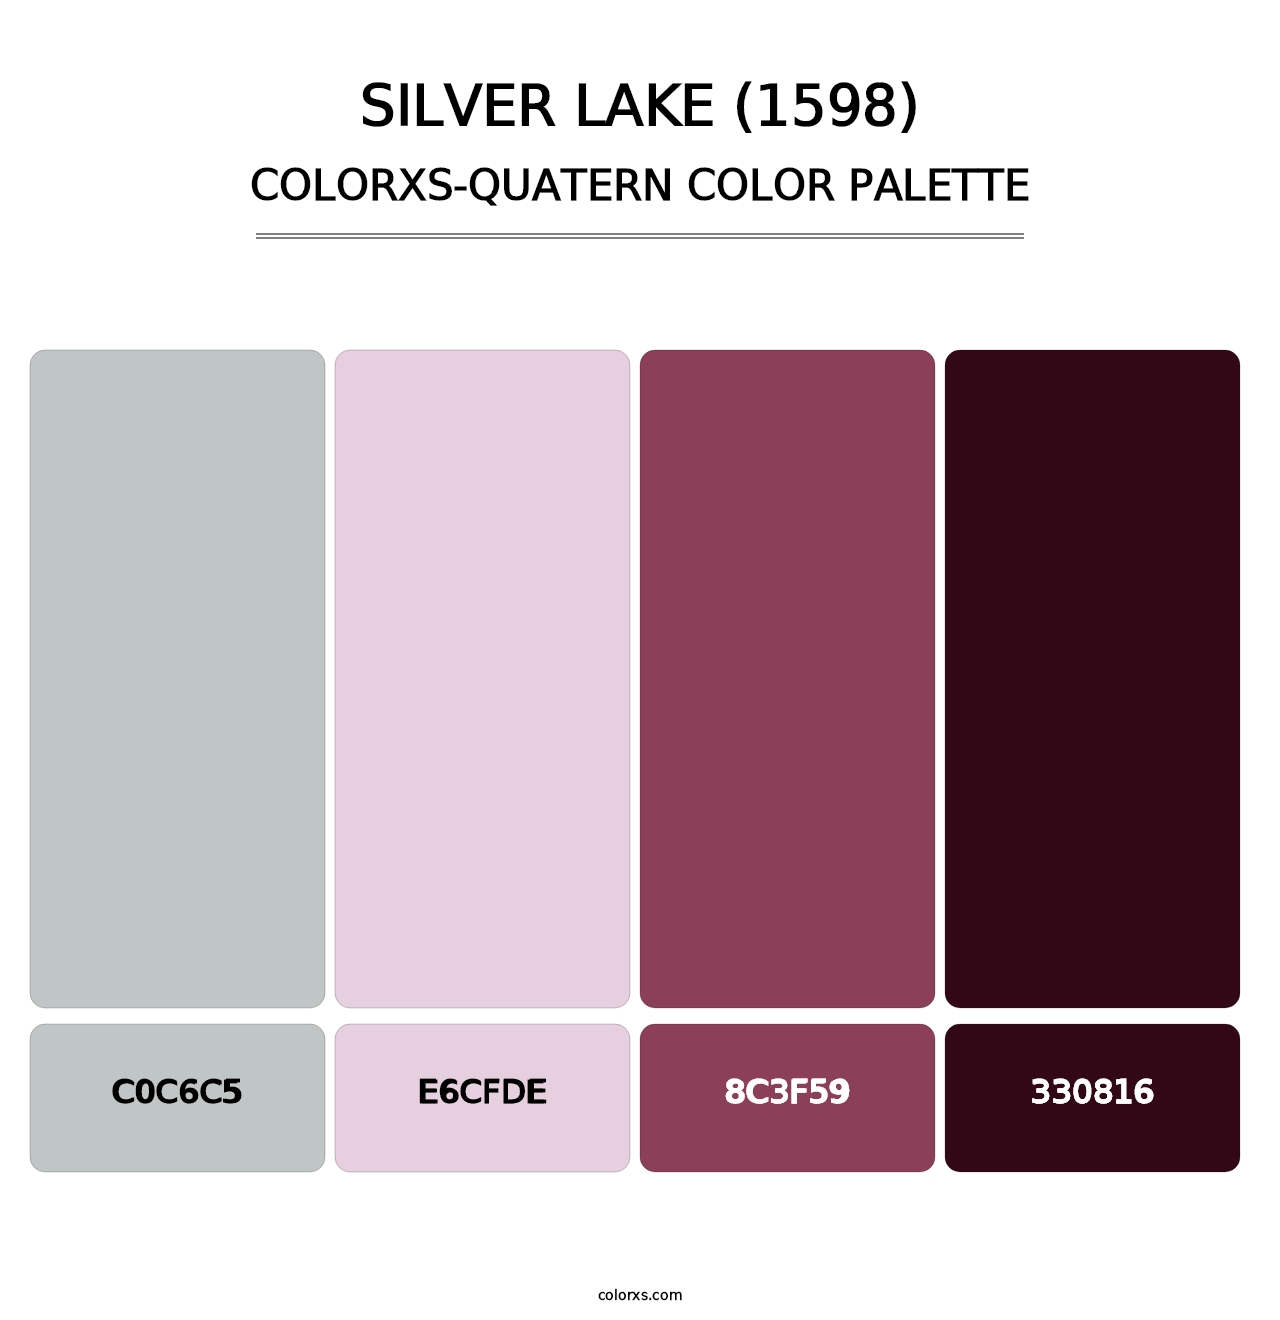 Silver Lake (1598) - Colorxs Quatern Palette